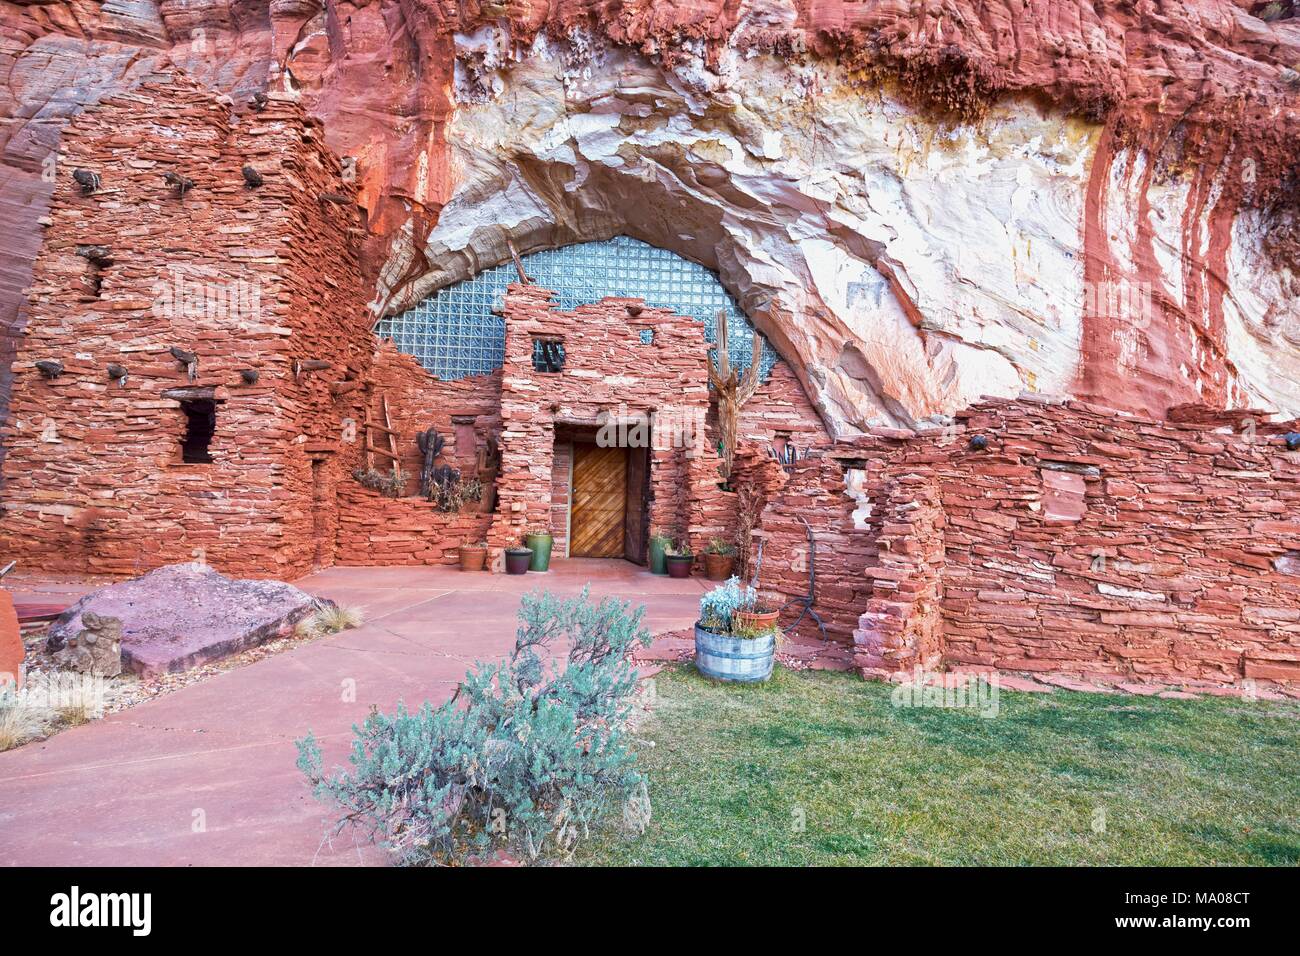 Moqui (Moki) Cave Shelter and Food Store Archaeology Ruins in Sandstone Cliffs près de Kanab Utah, autrefois utilisé par Anasazi Hopi Native Tribe Banque D'Images